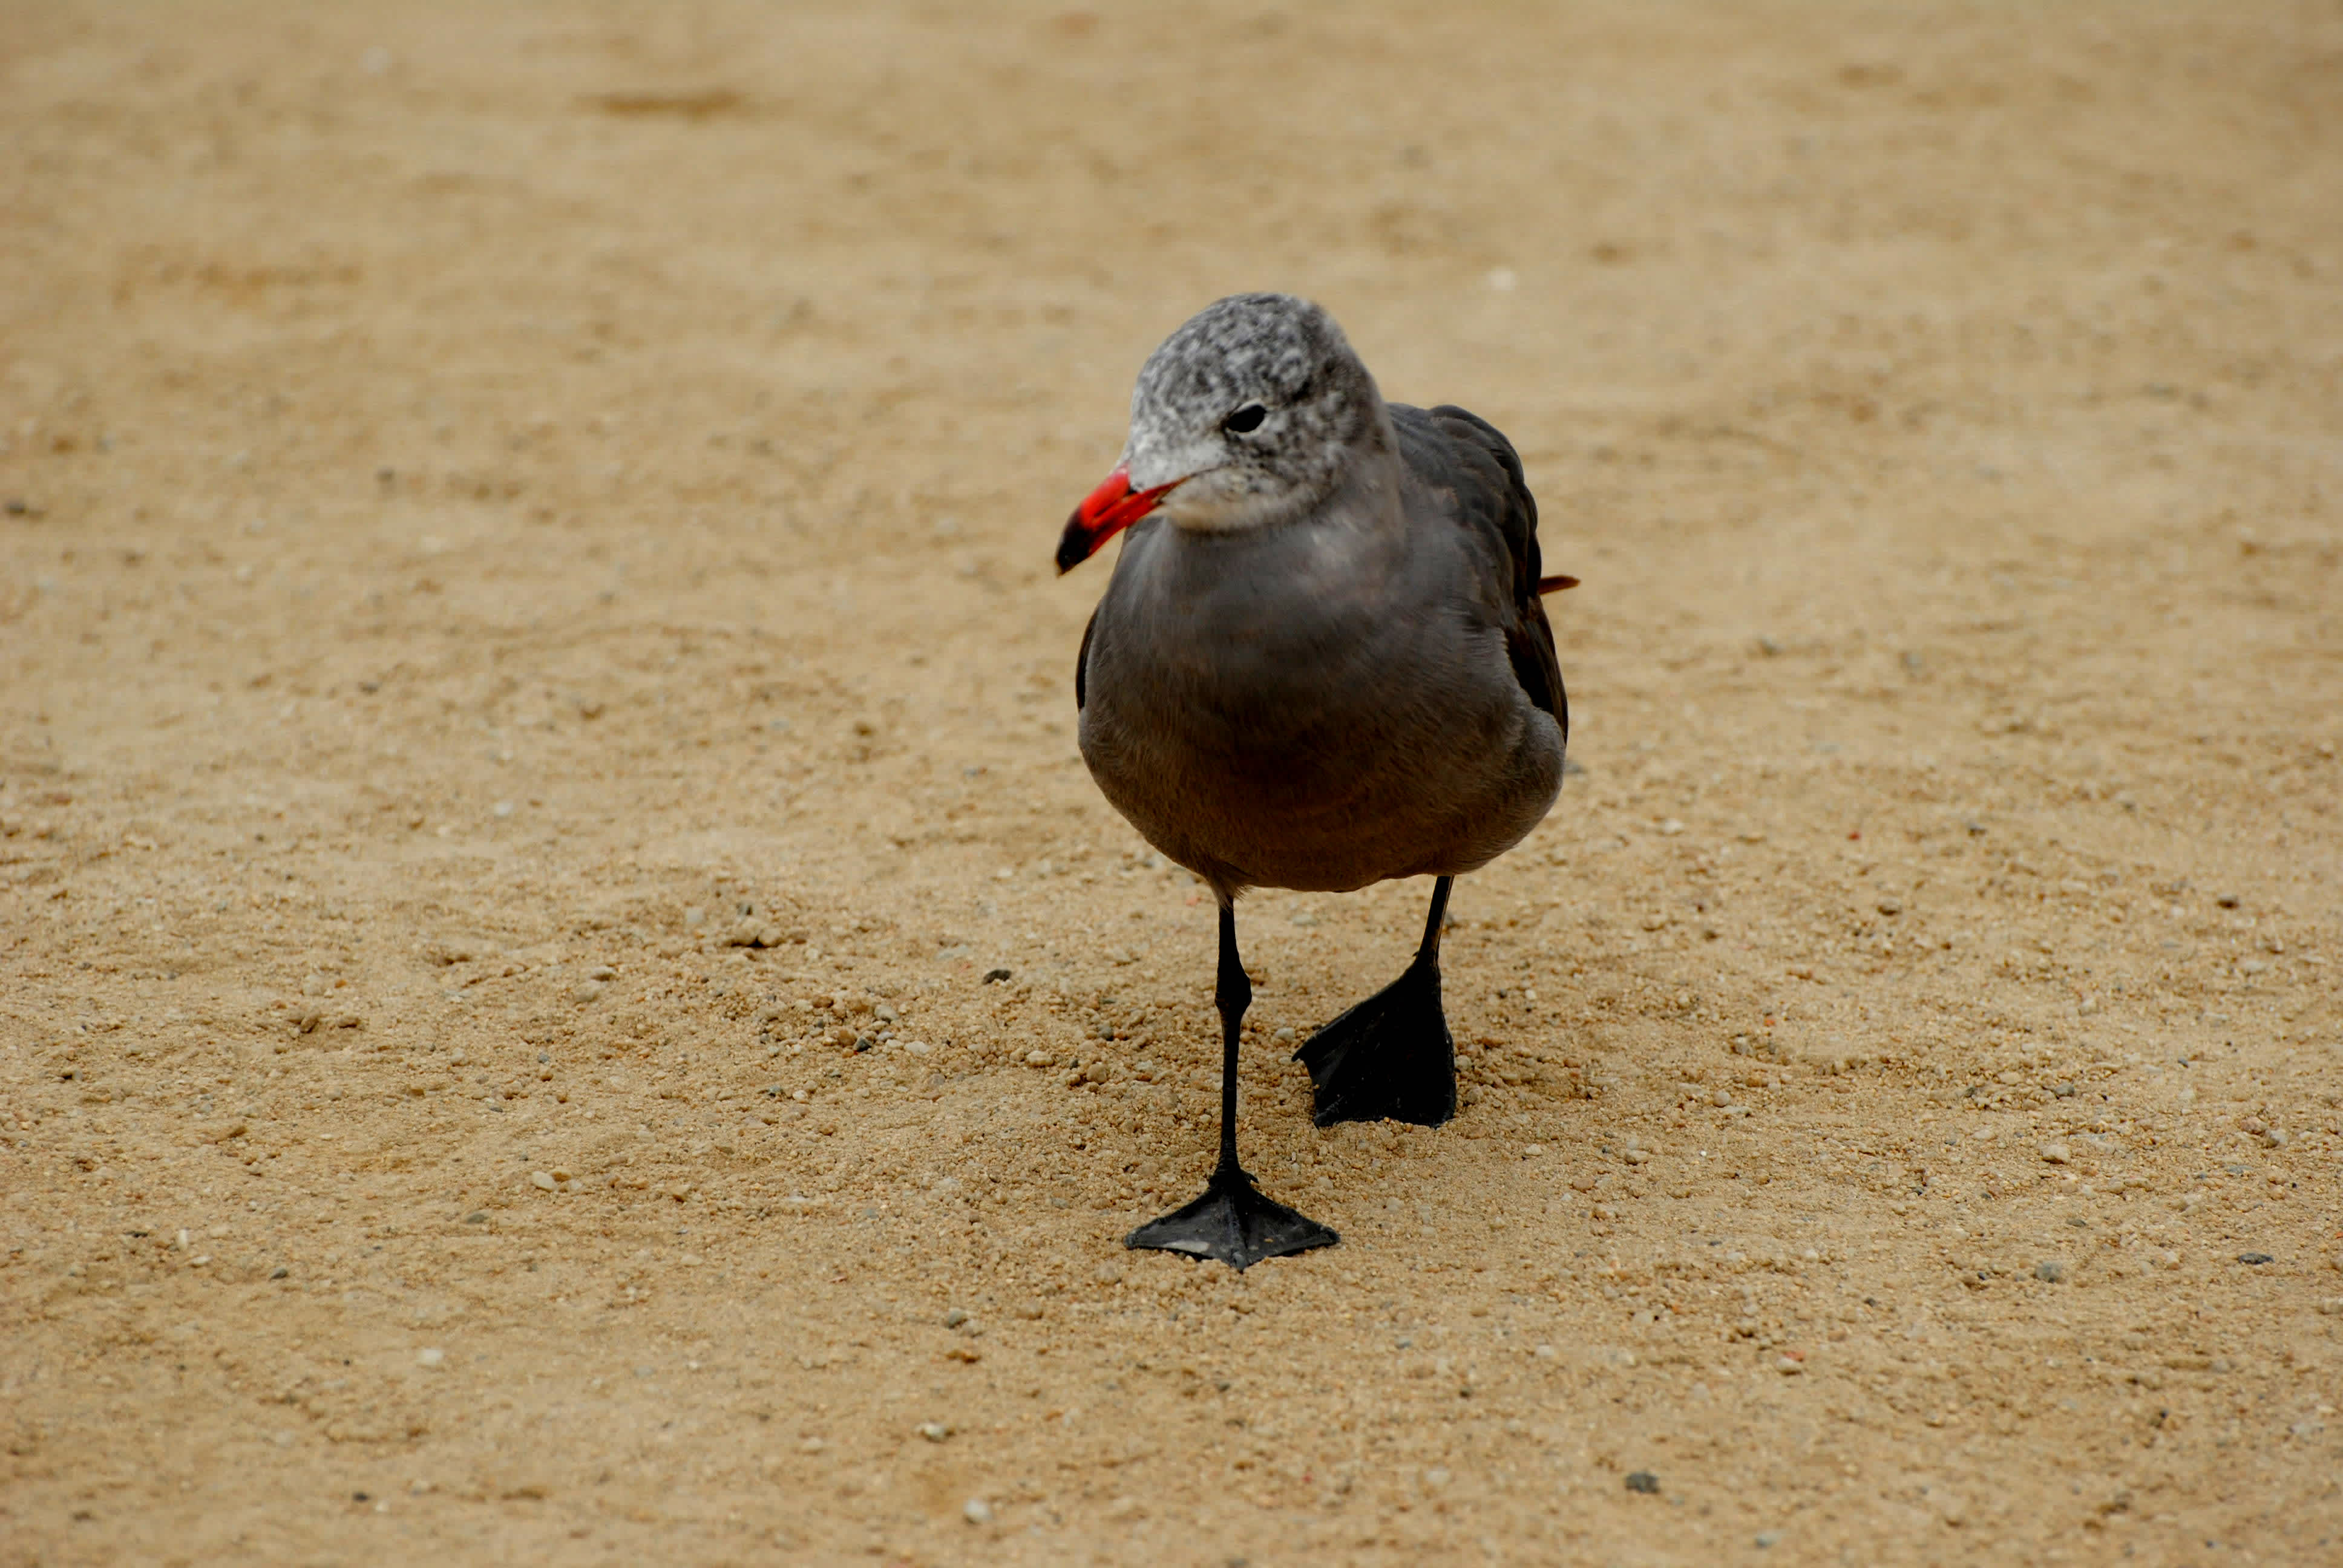 Bird walking on the sand.